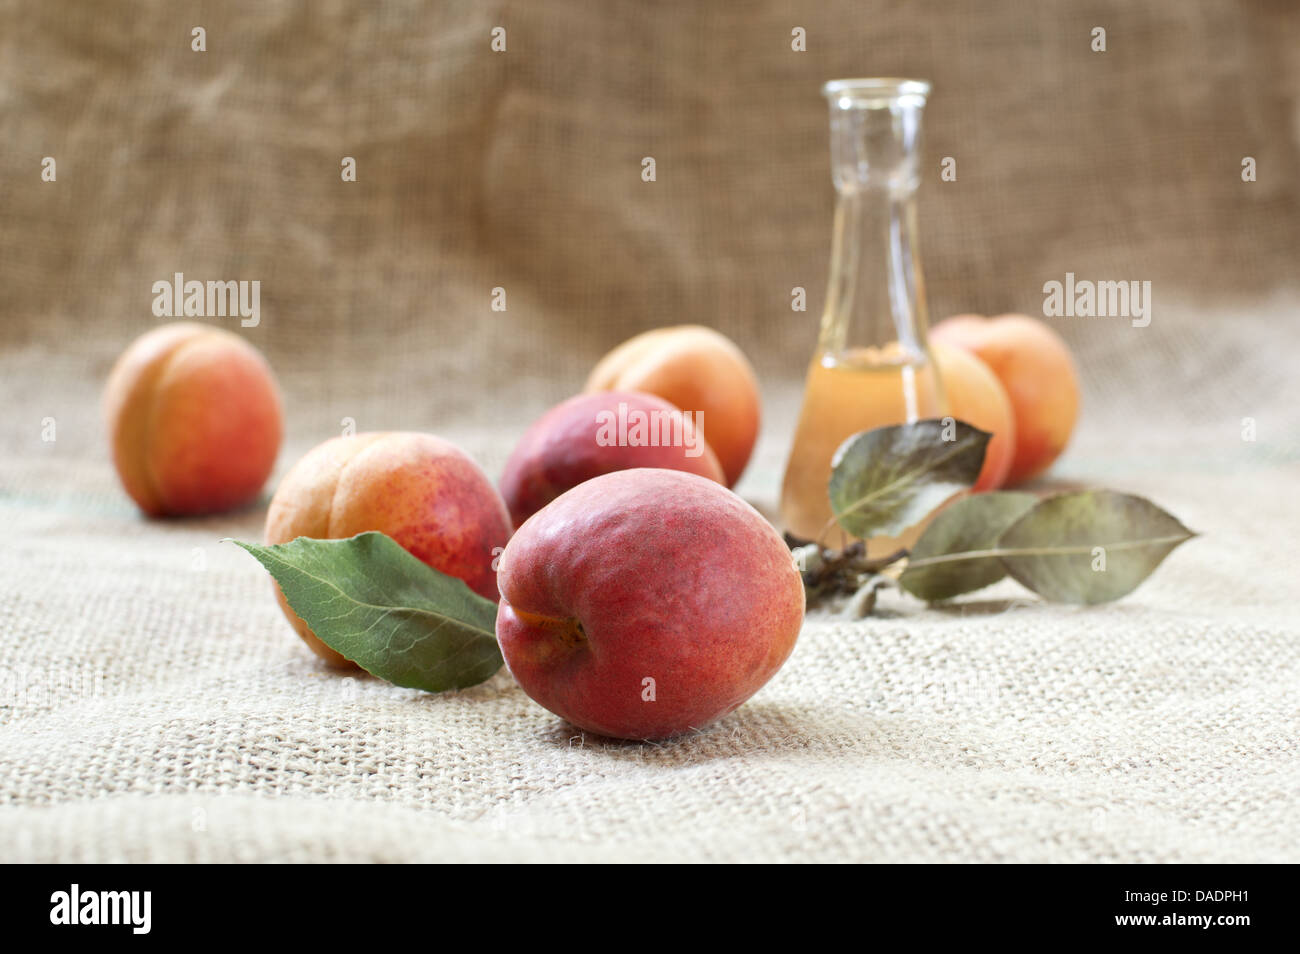 Aprikosenschnaps mit frischen und leckeren Aprikosen Obst auf einer Tischdecke. Selektiven Fokus mit geringen Schärfentiefe. Stockfoto